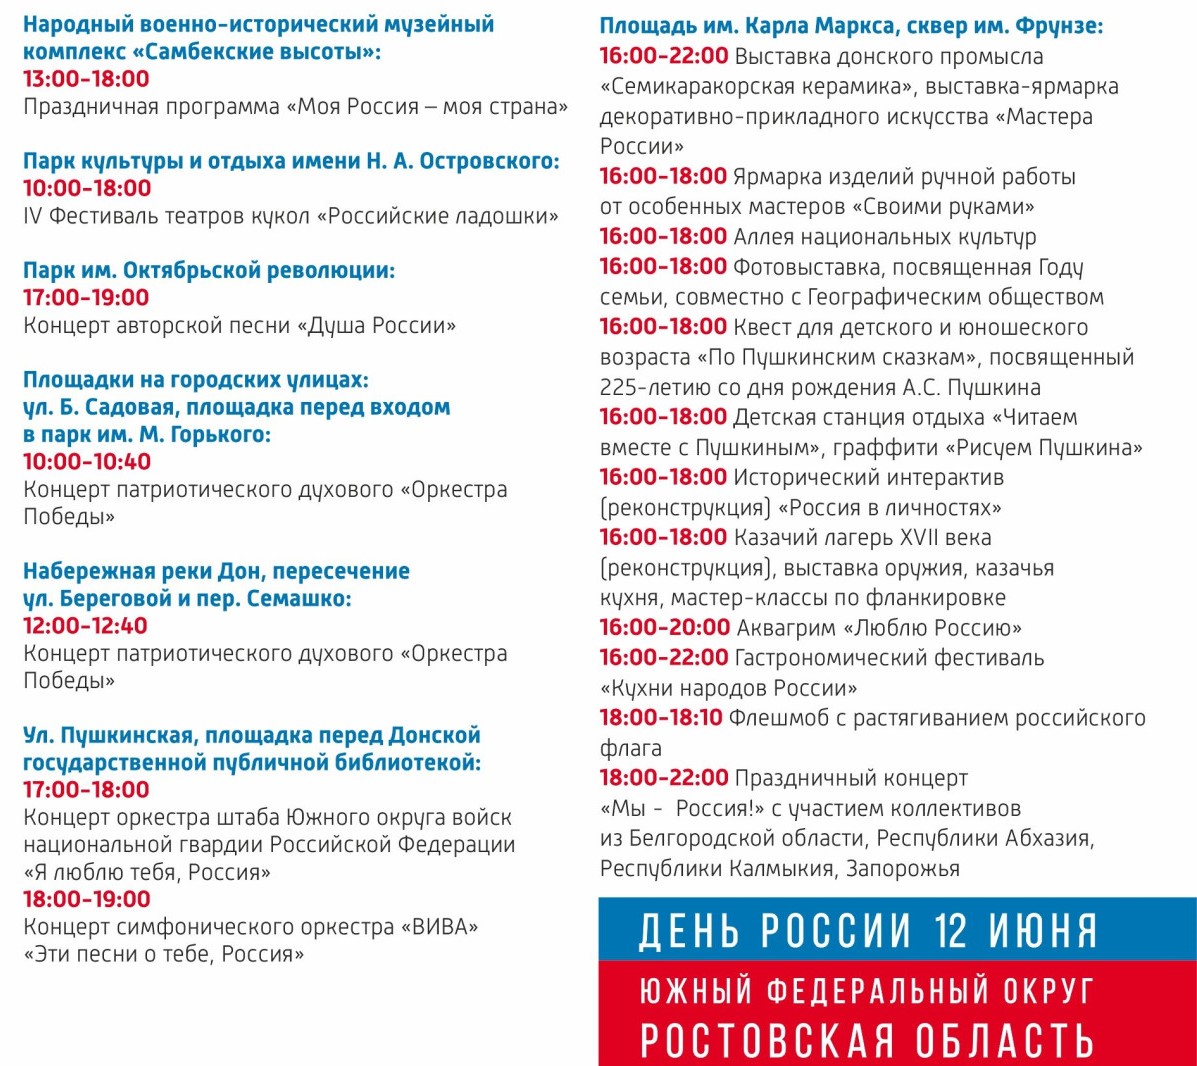 12 июня в День России в Ростове-на-Дону пройдут праздничные мероприятия. ПРОГРАММА